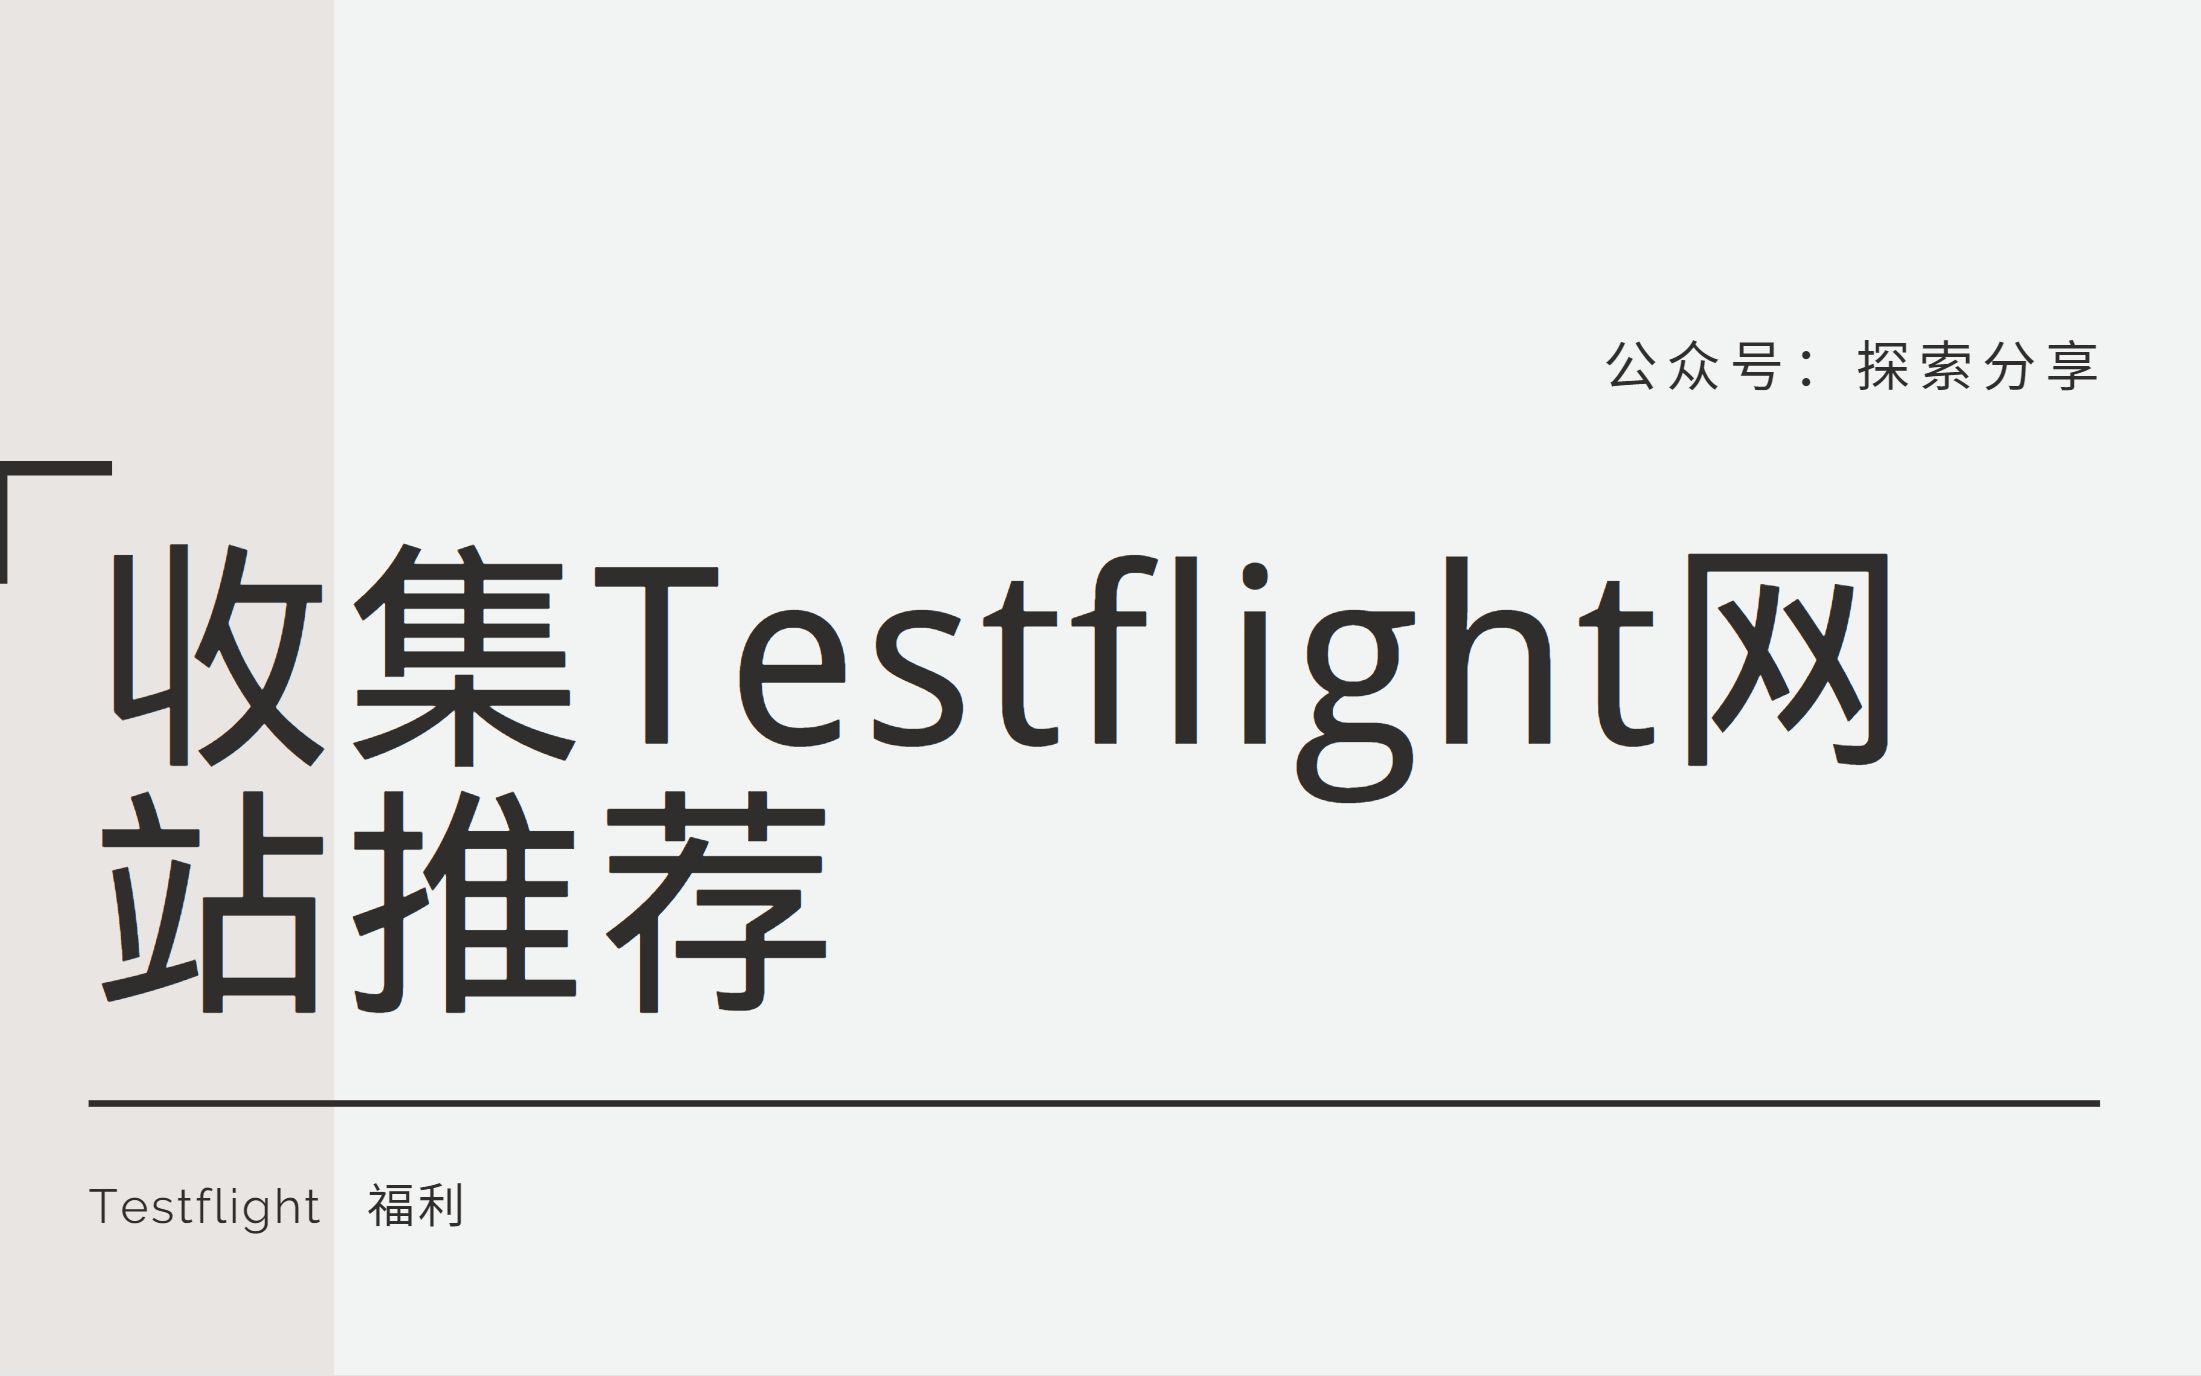 终于终于它又来了，Testflight链接收集的网站